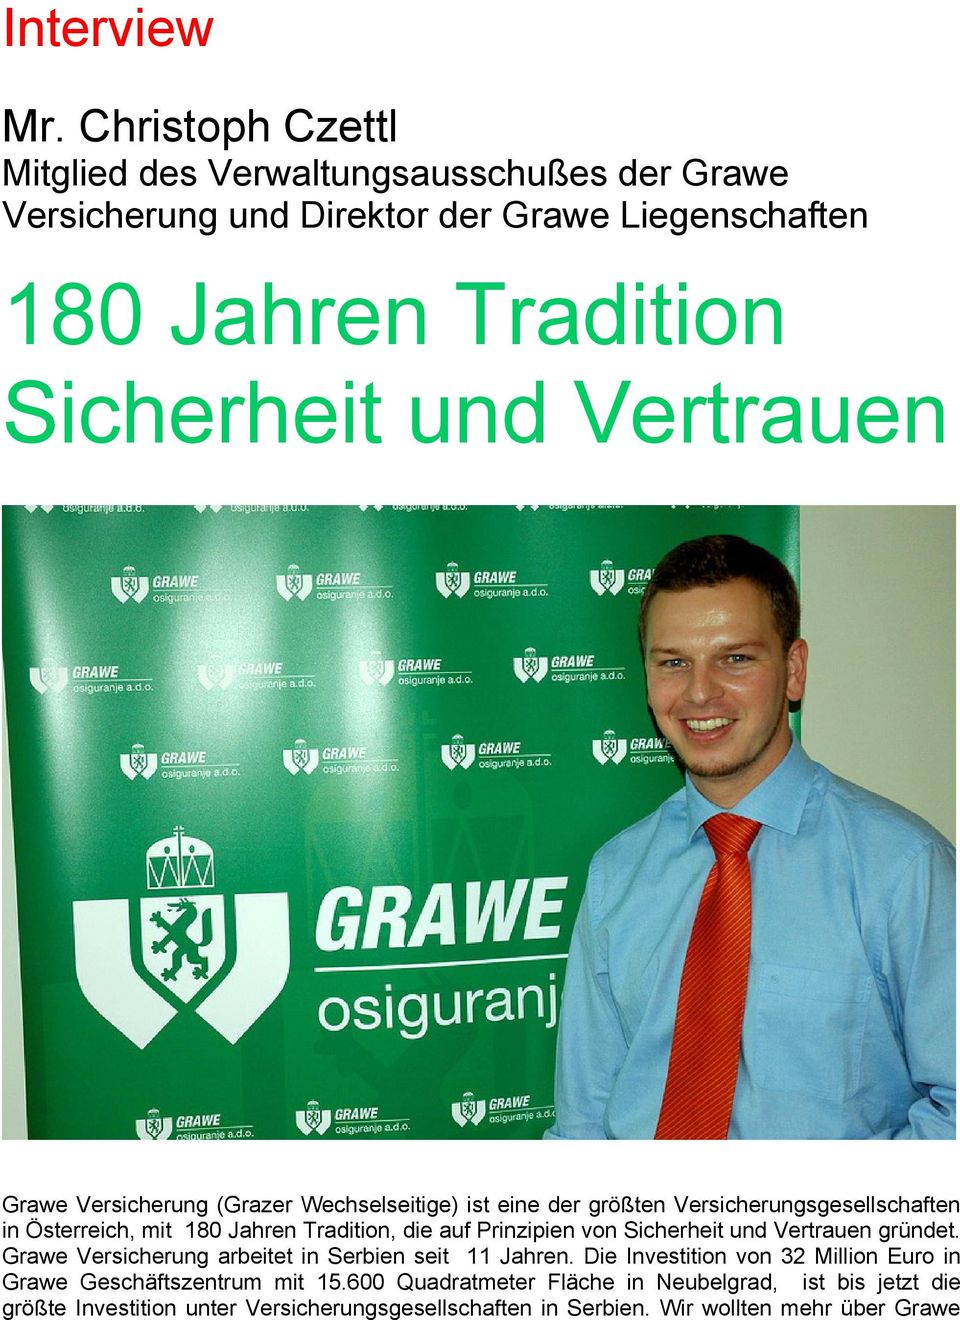 Grawe Versicherung (Grazer Wechselseitige) ist eine der größten Versicherungsgesellschaften in Österreich, mit 180 Jahren Tradition, die auf Prinzipien von